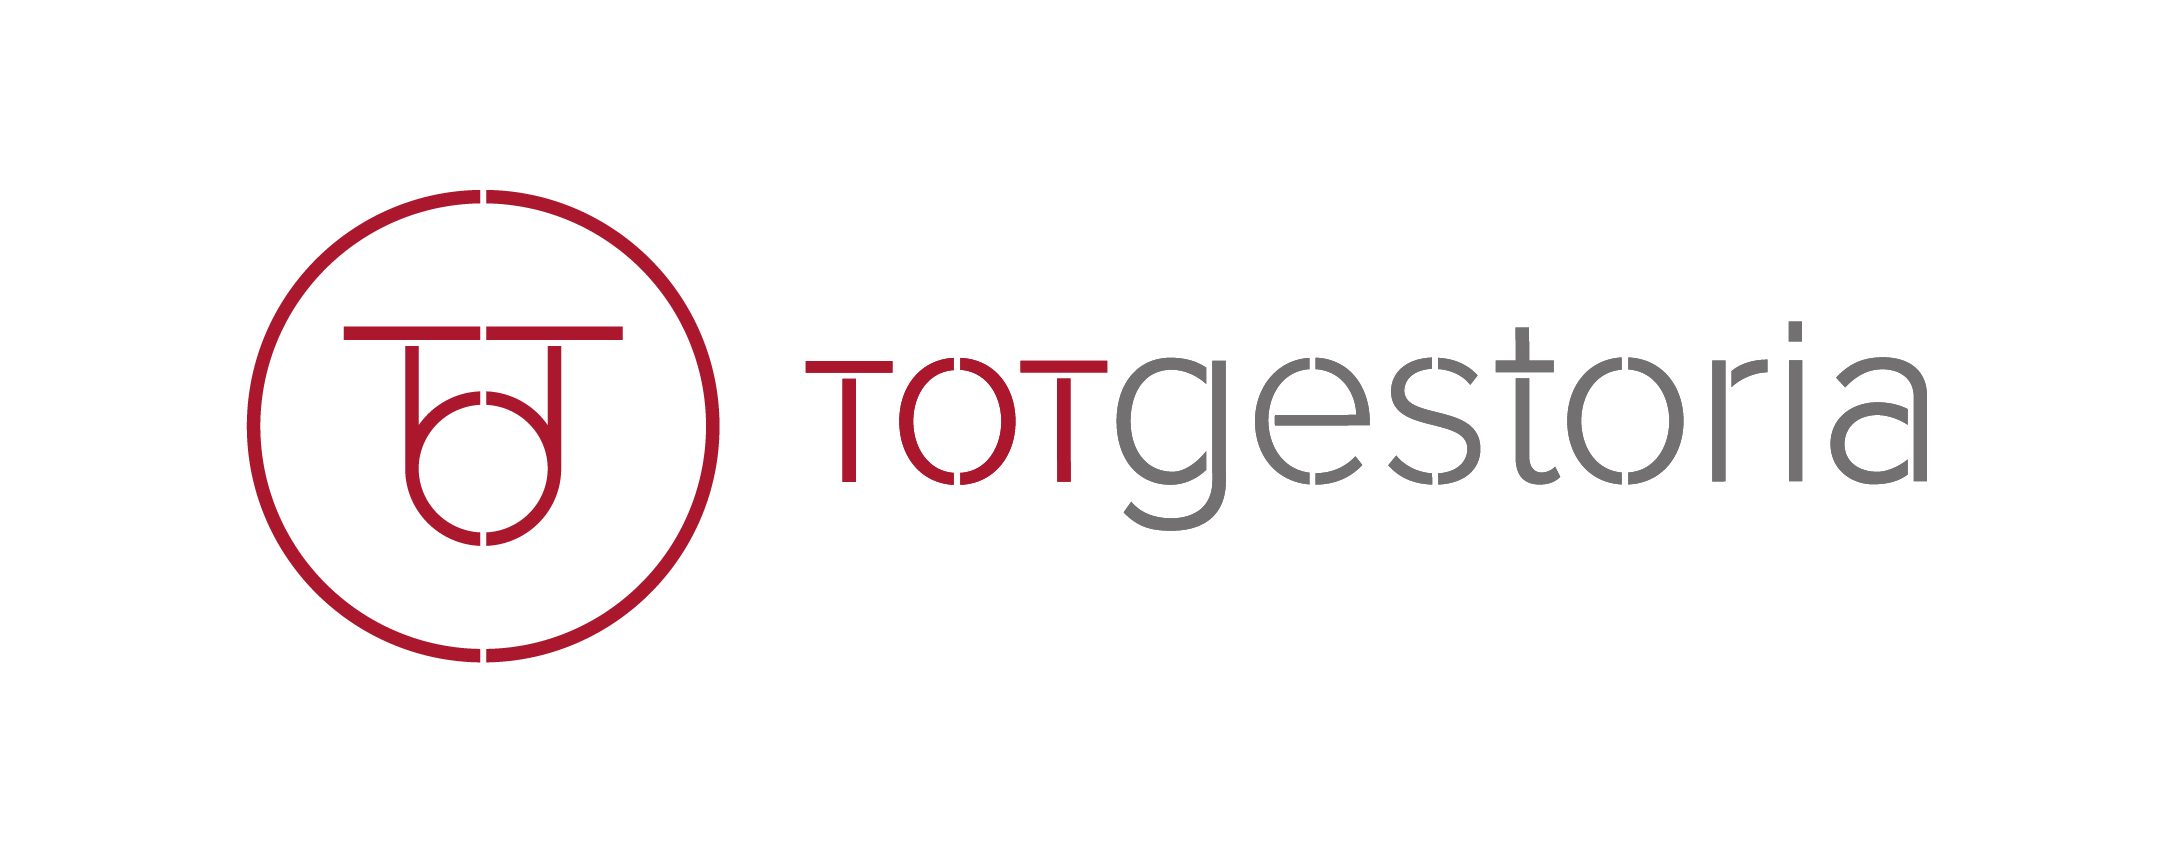 TOTgestoria-Logotipo_horizontal-original